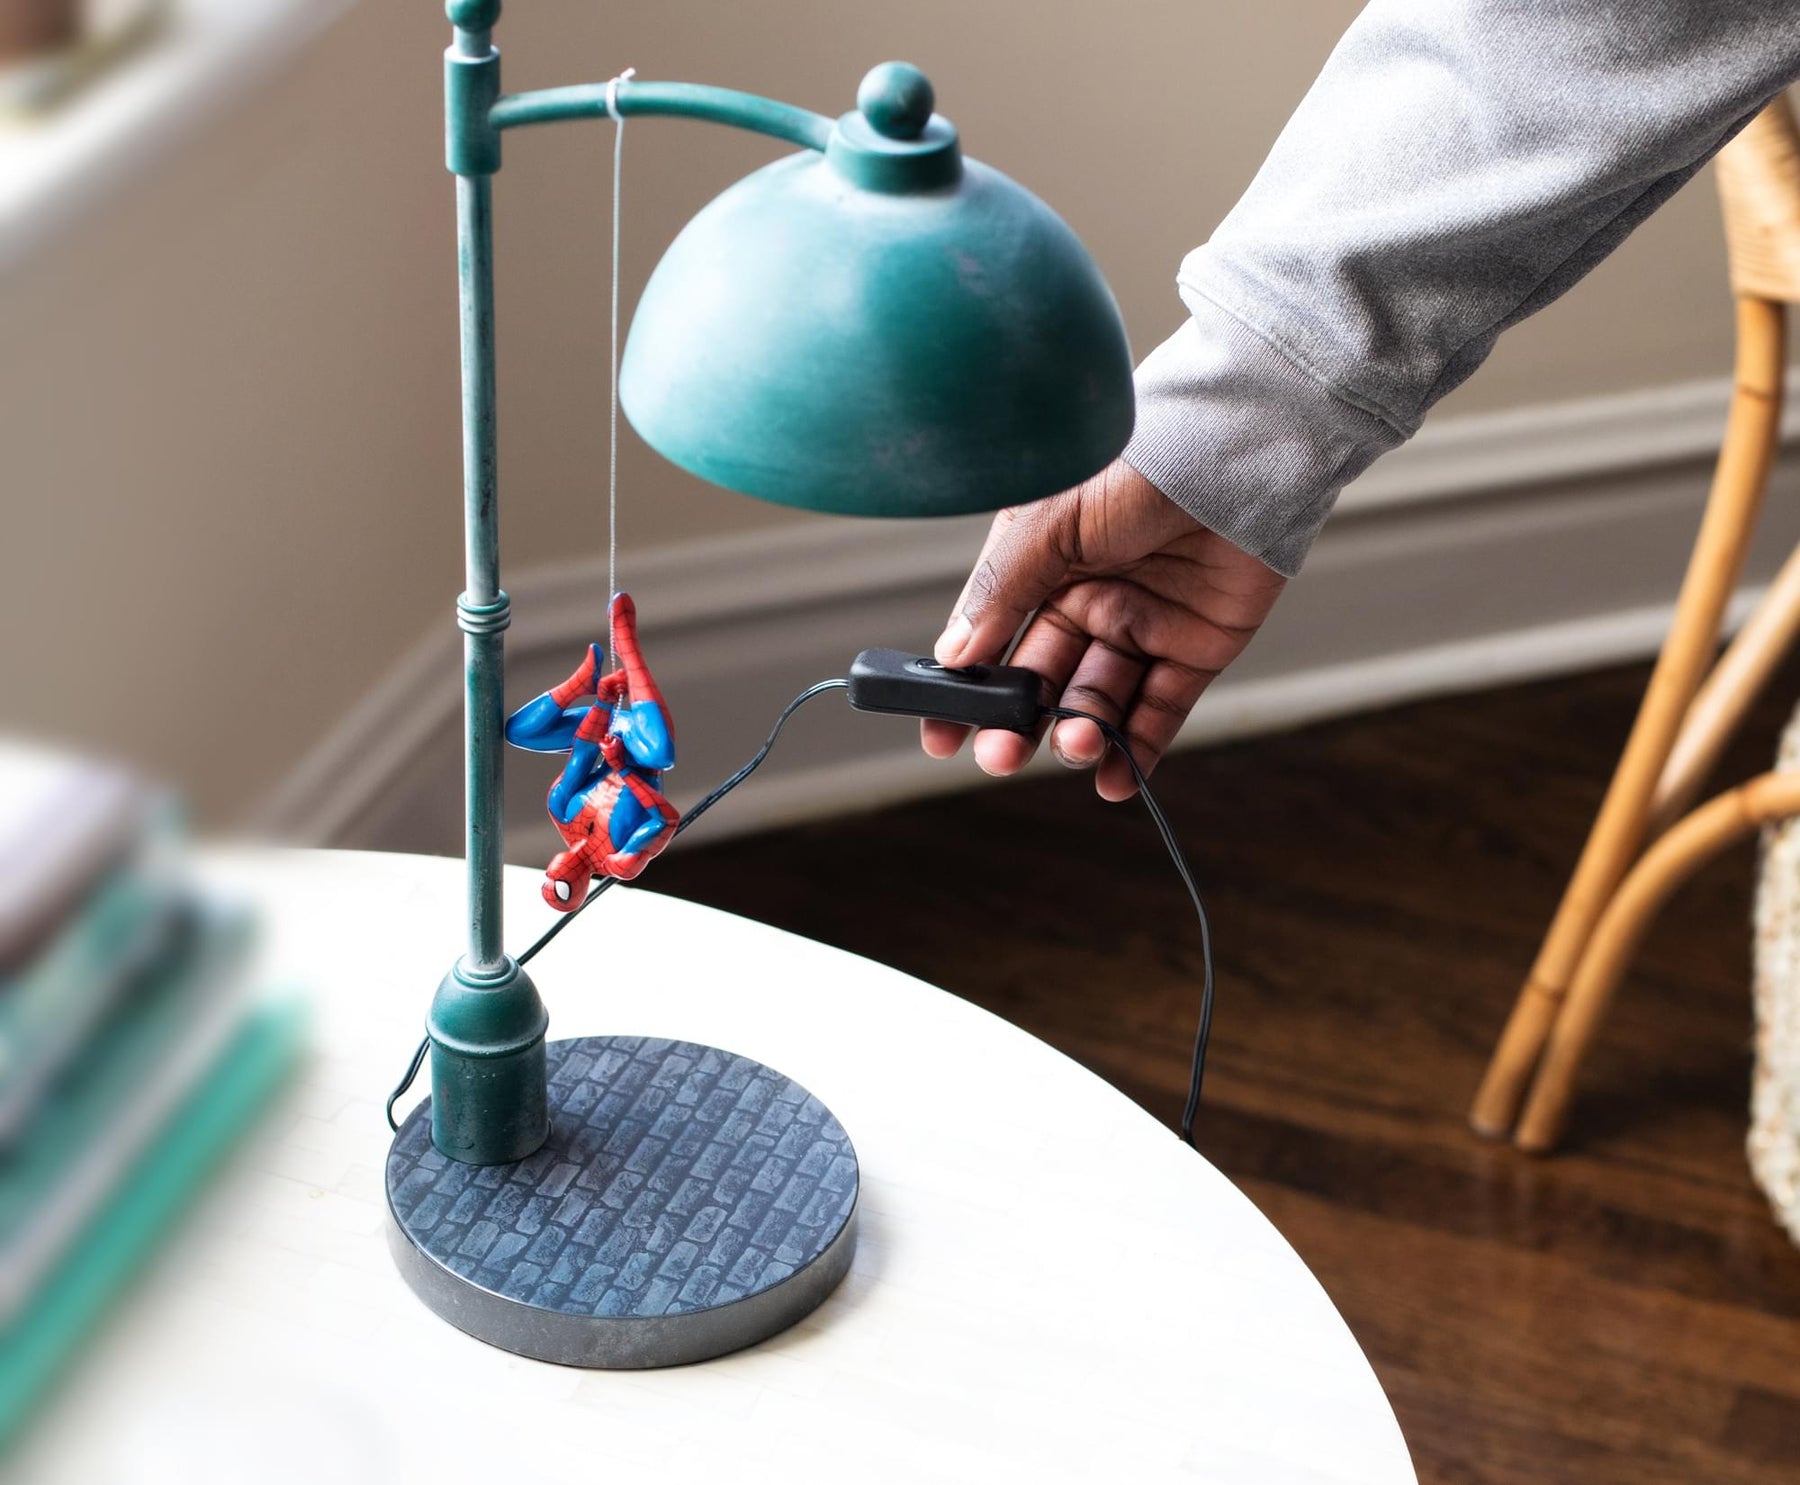 Marvel Spider Man Streetlight LED Desk Lamp | 16 Inches